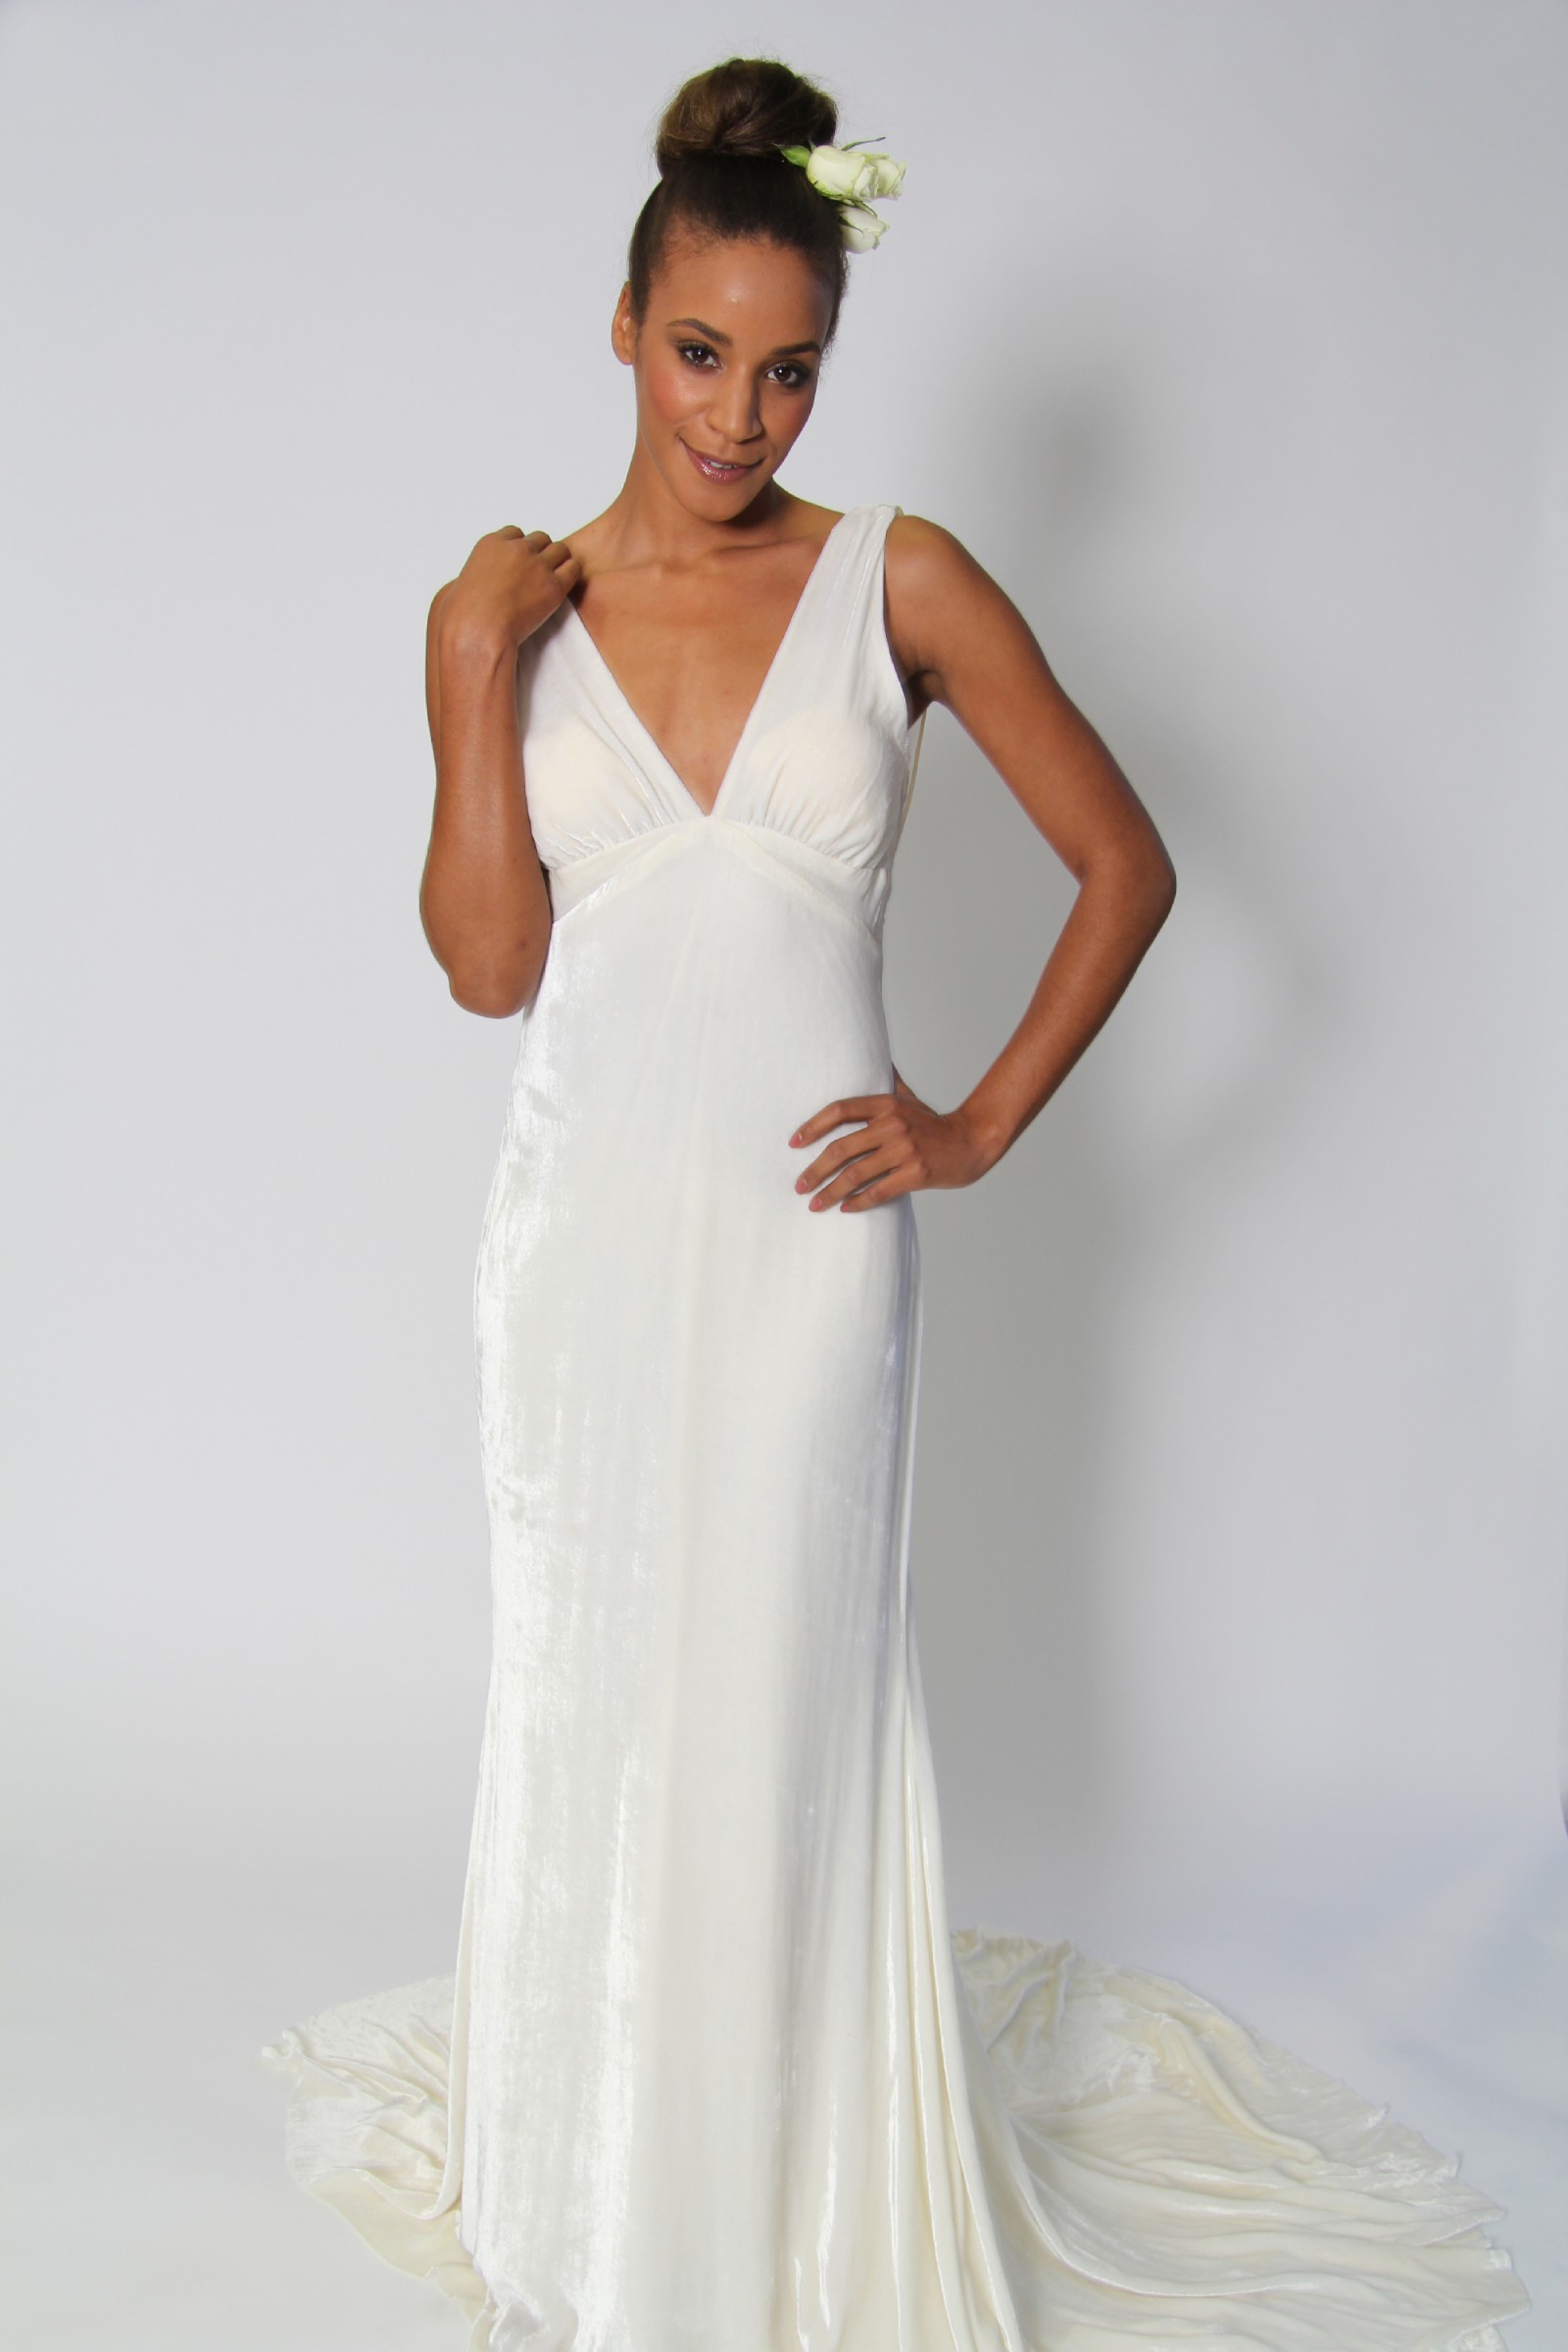 Finiks London  Elizabeth Sample Wedding  Dress  on Sale  60 